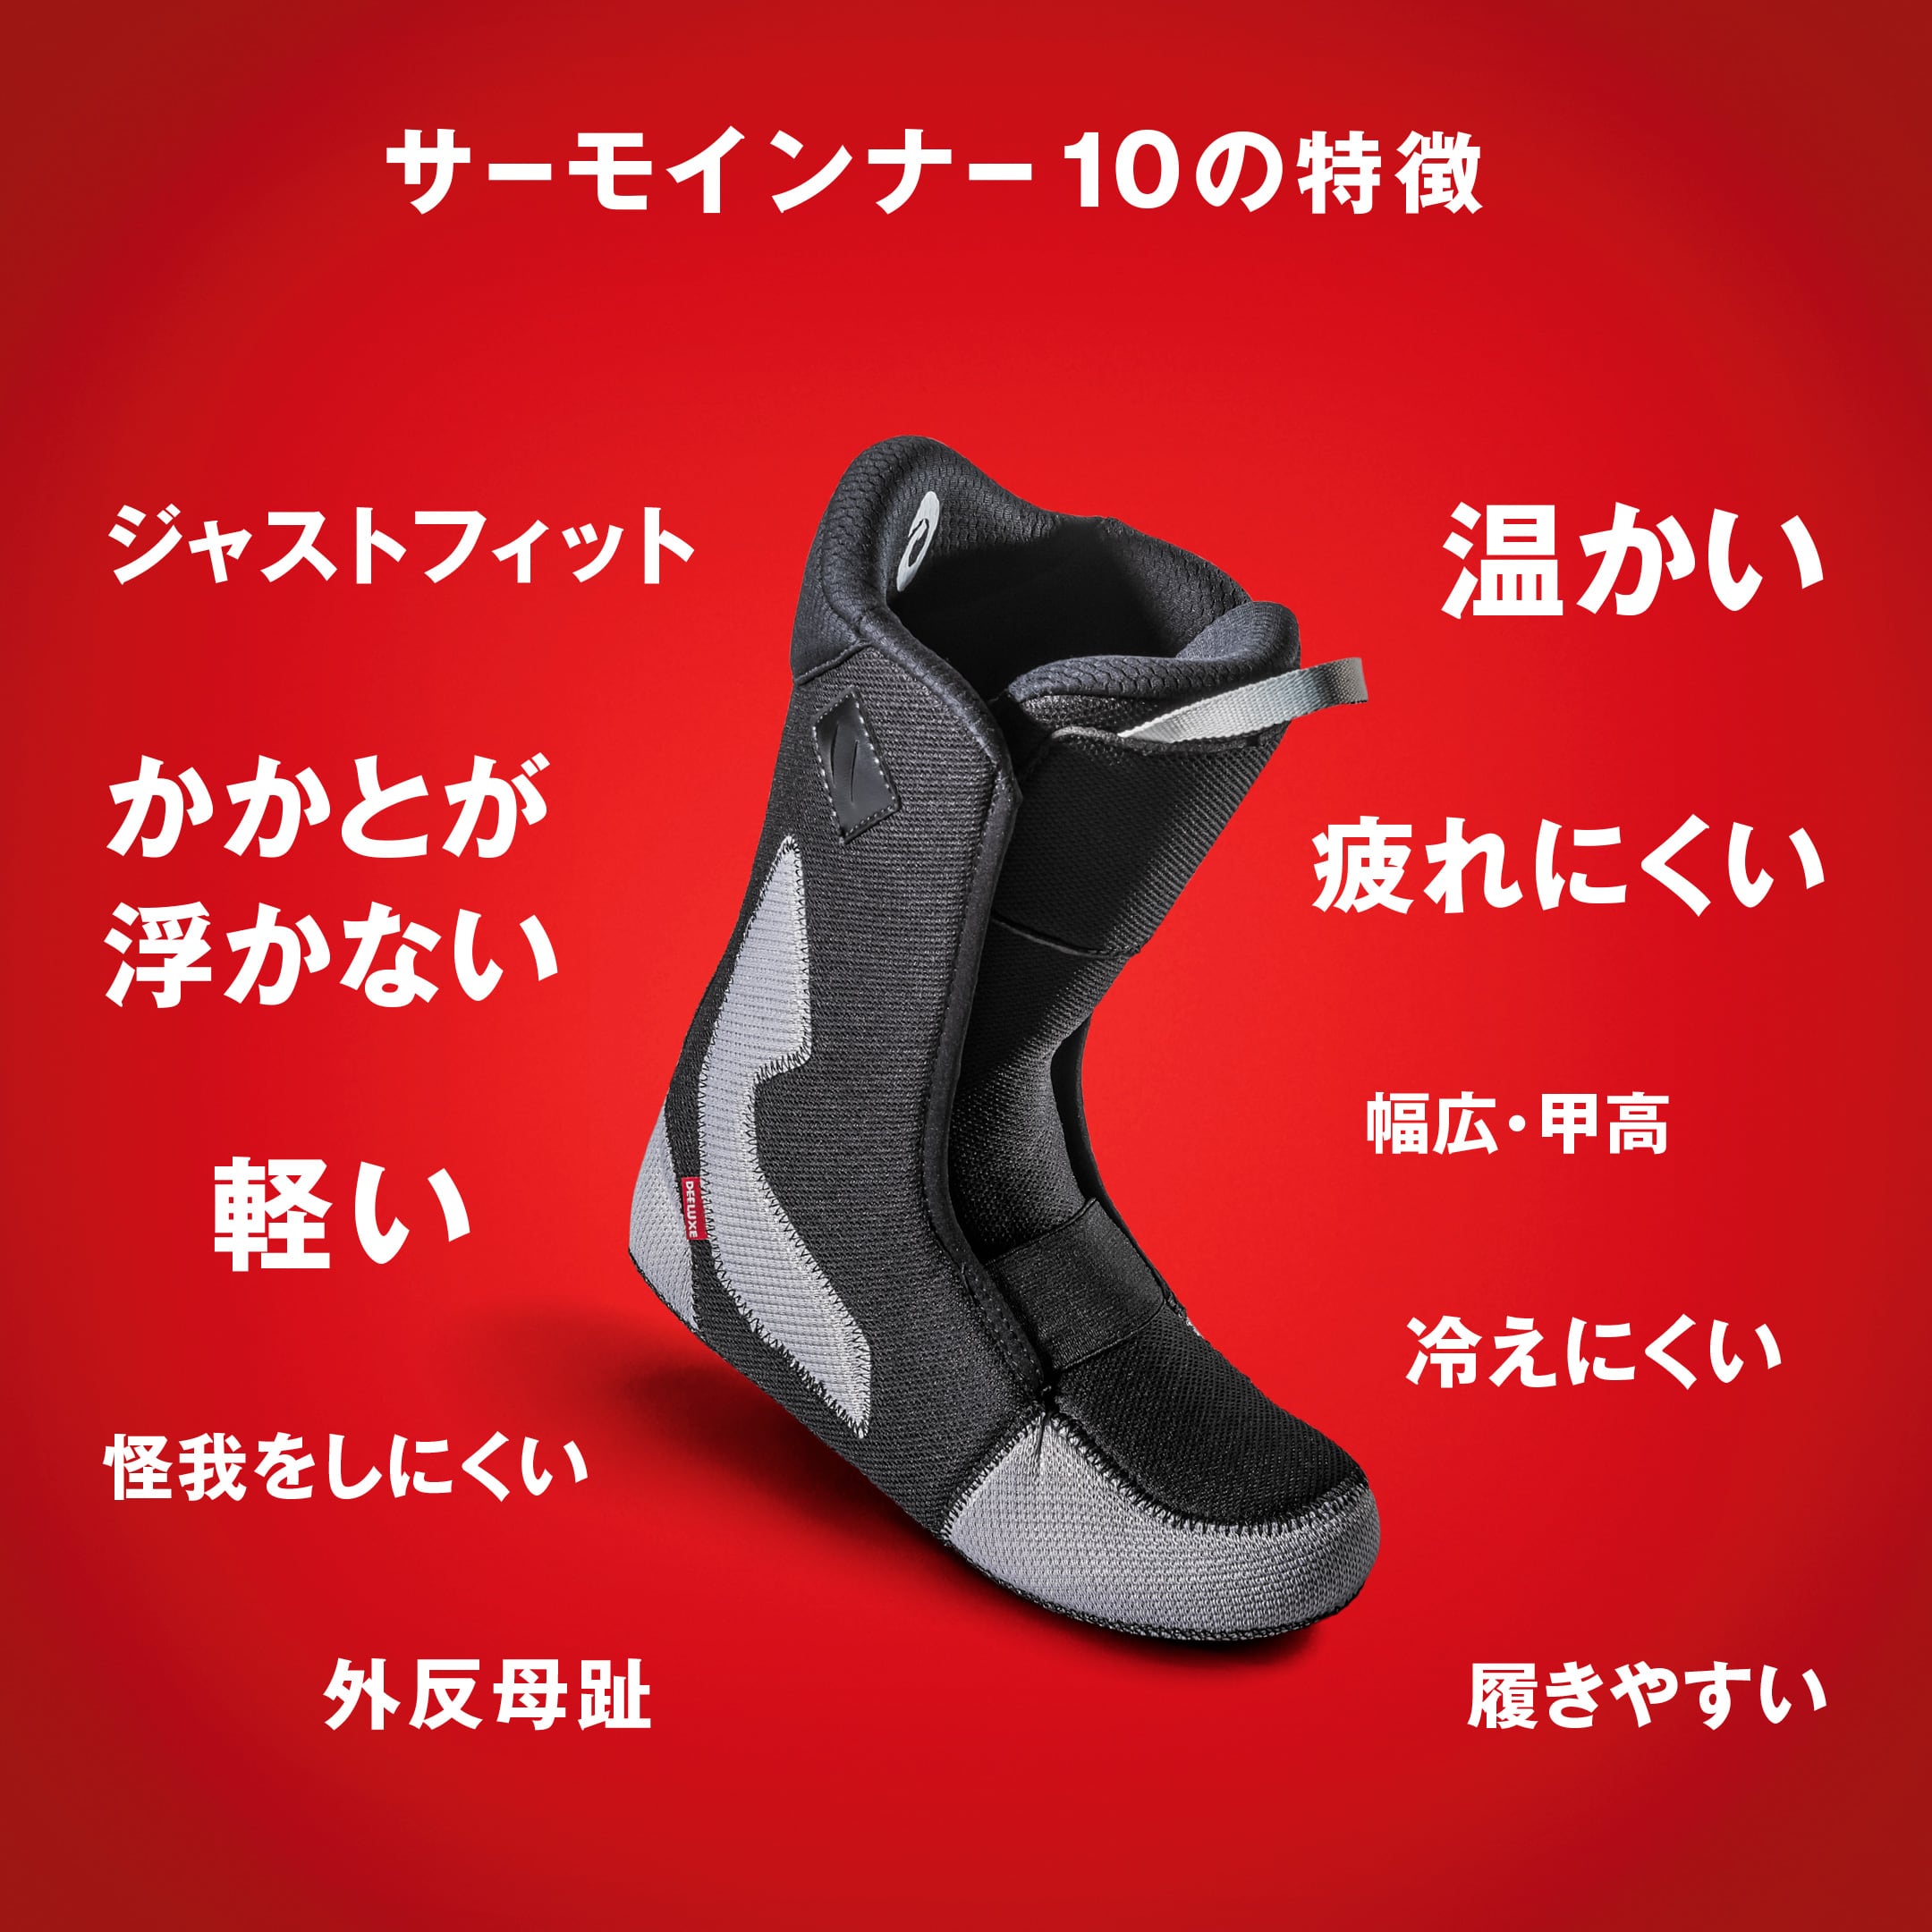 【美品 】DEELUXE ID ディーラックス サーモフィット ブーツ 26.5商品画像について